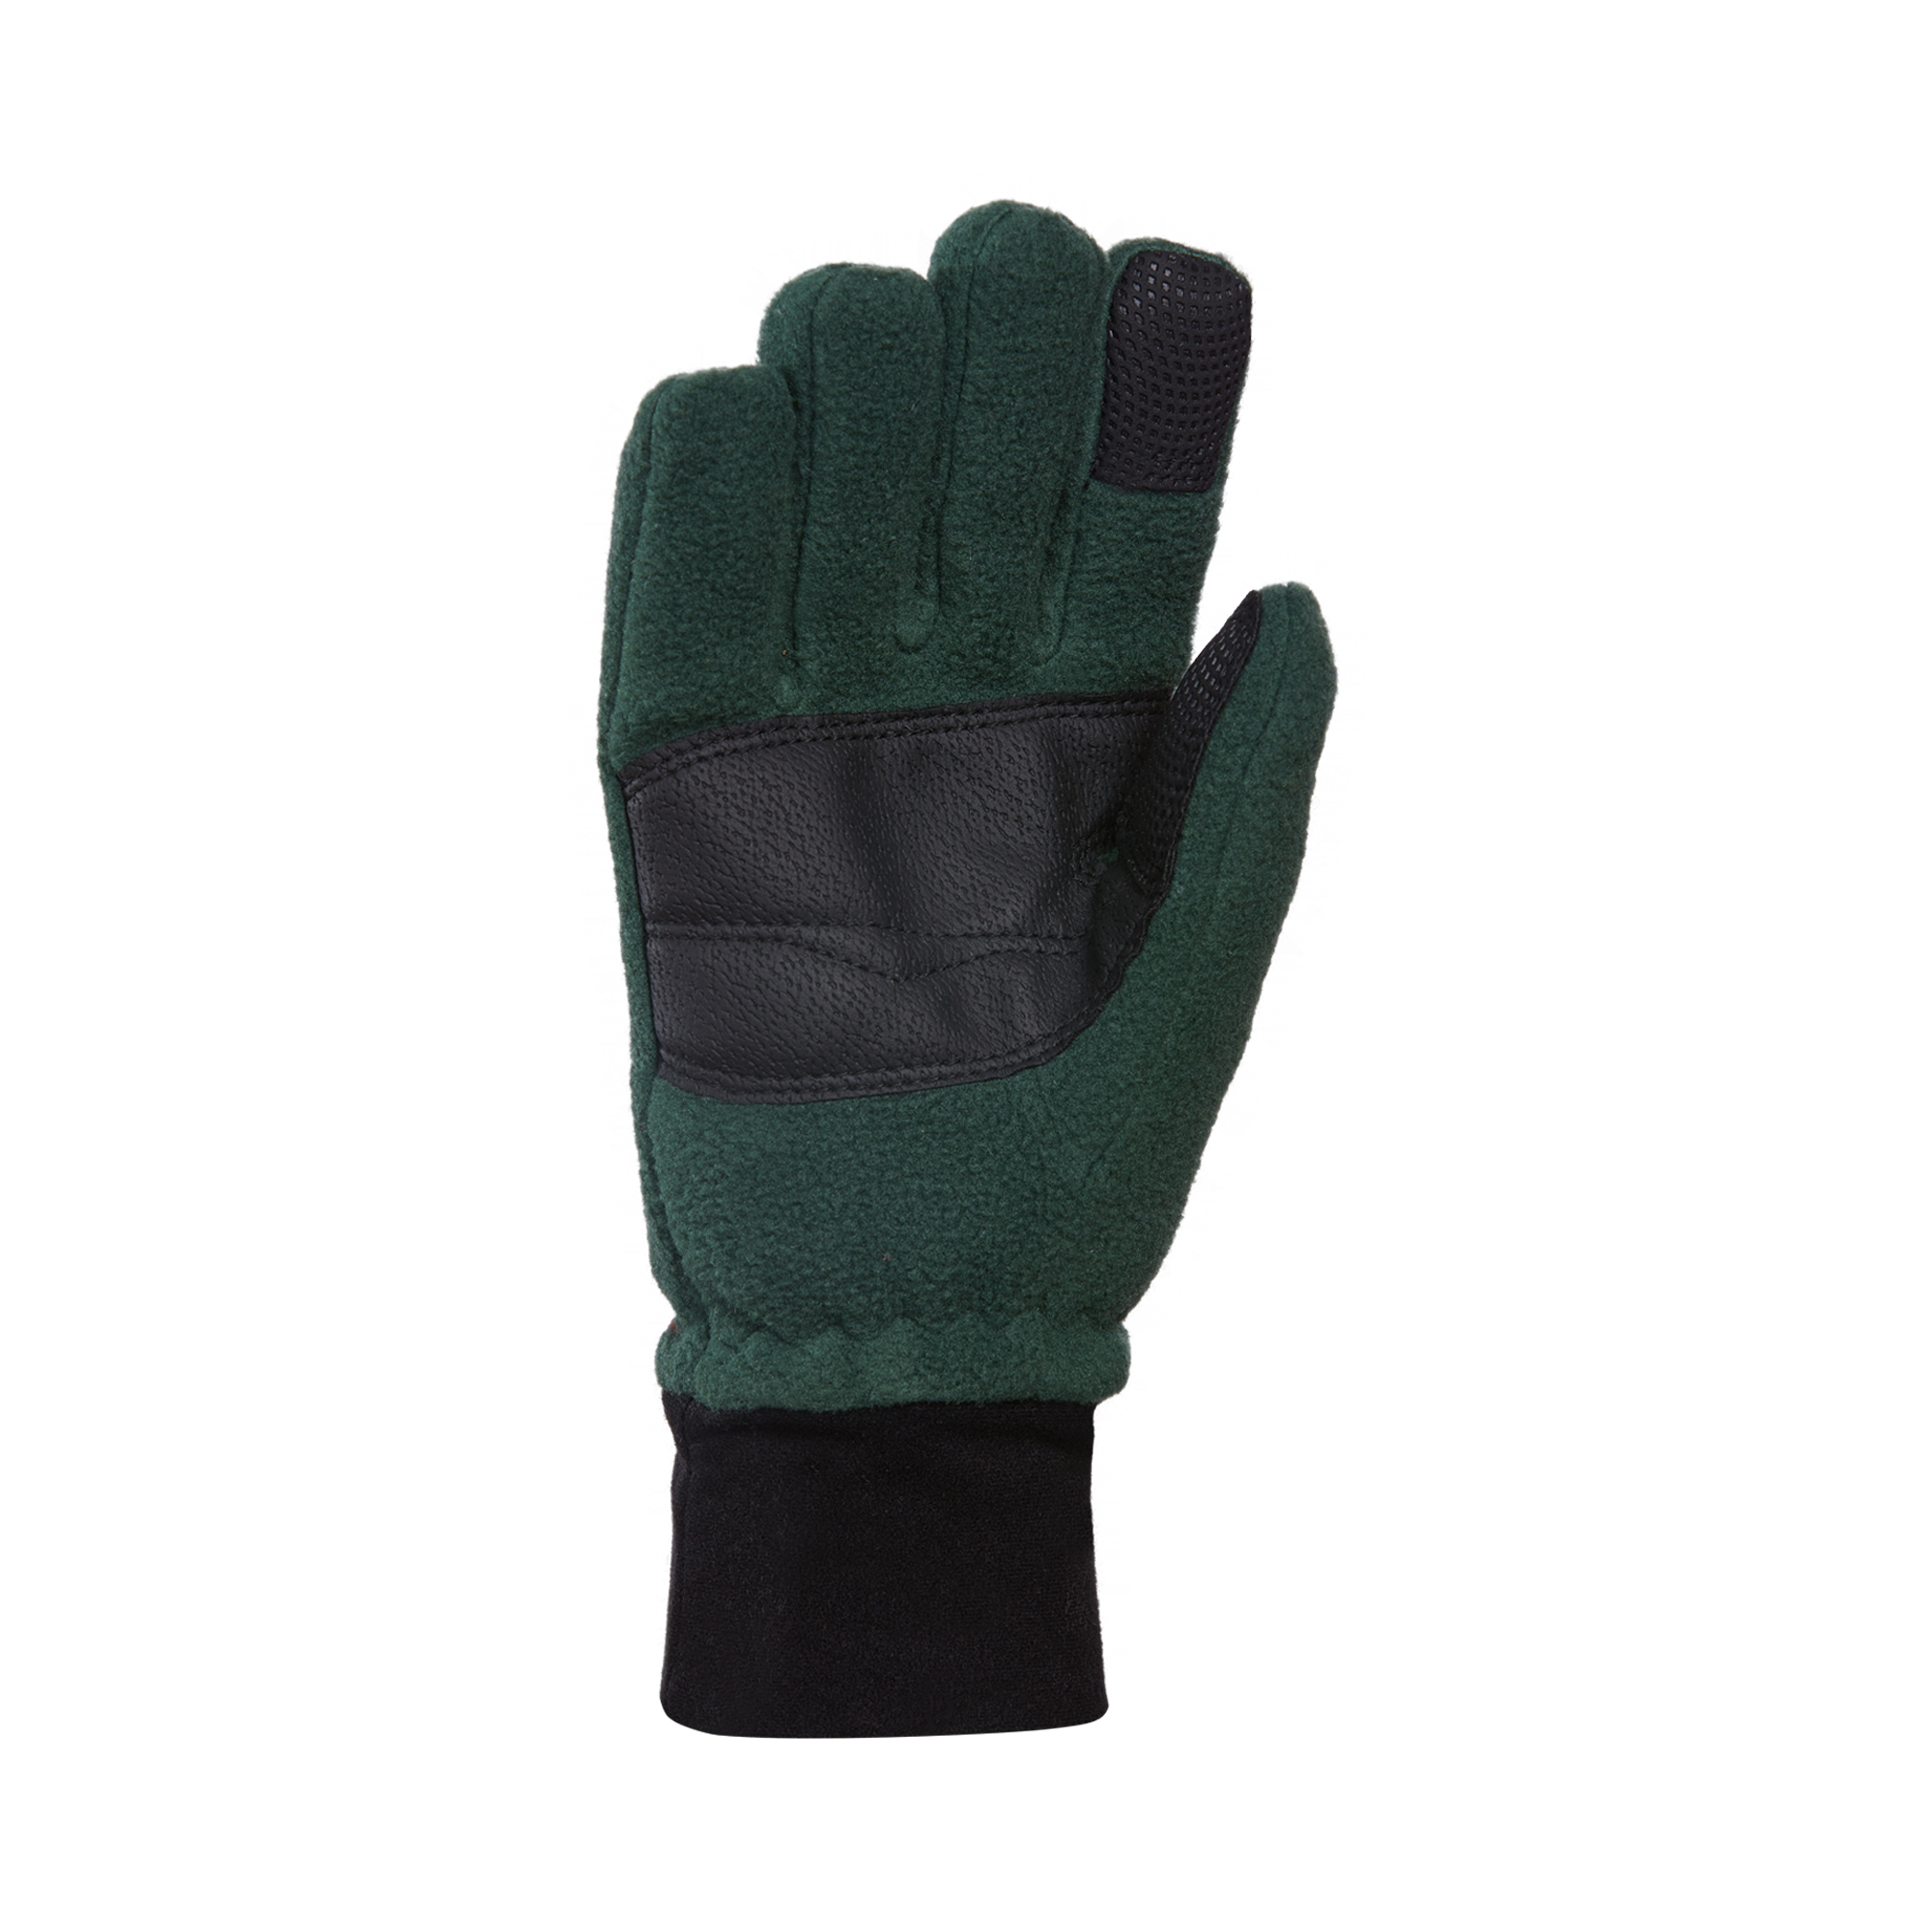 Kombi - The Windguardian Junior Gloves